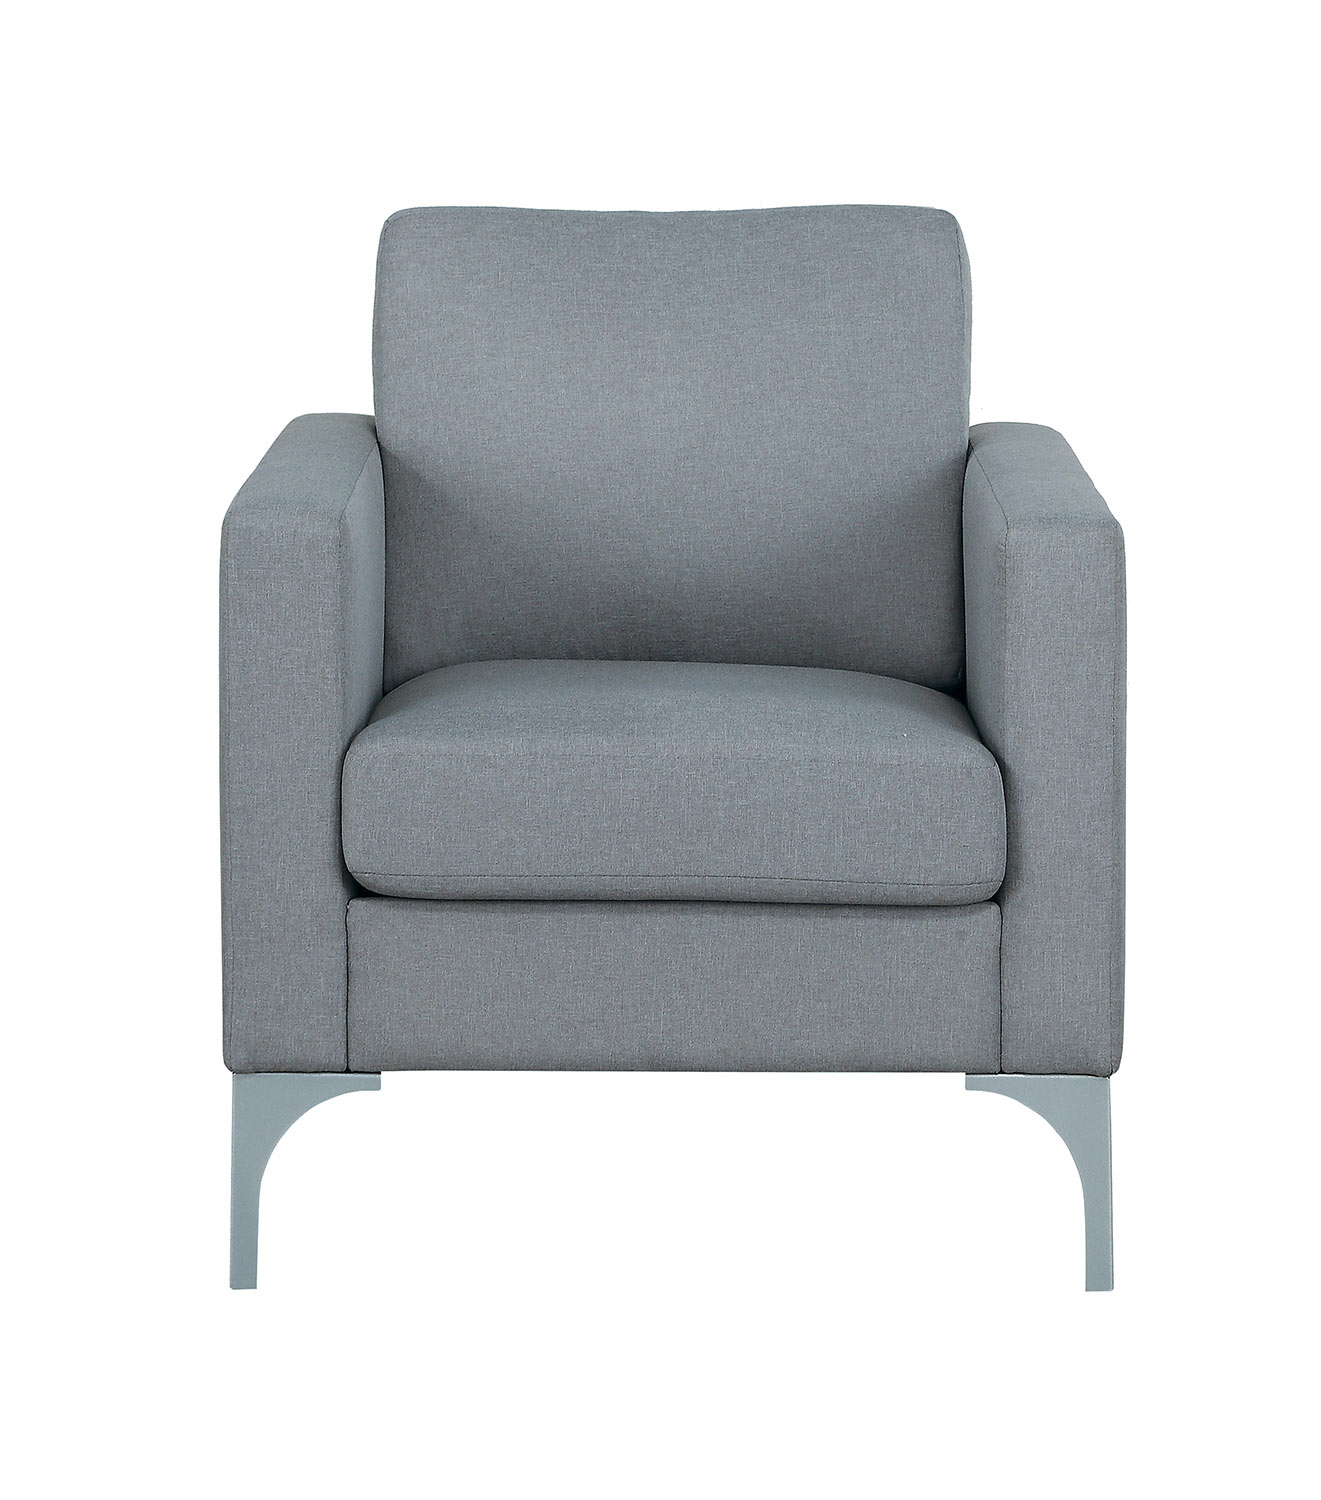 Homelegance Soho Chair - Light Gray